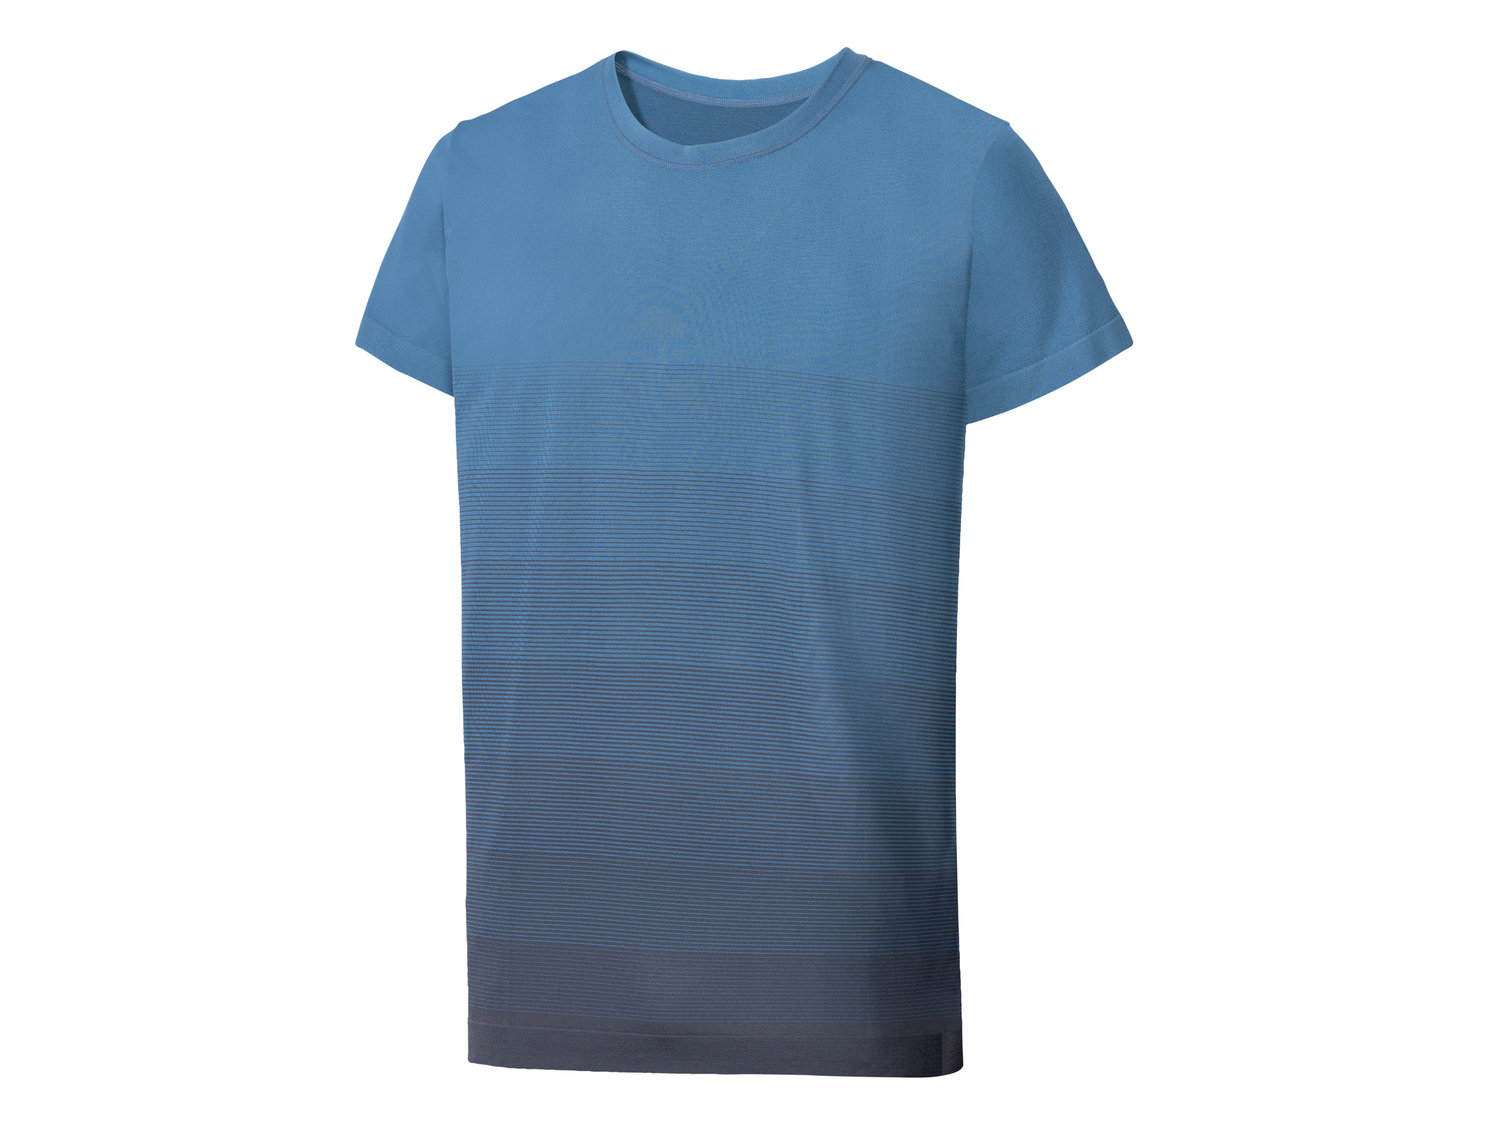 T-shirt sportiva da uomo Crivit, prezzo 4.99 &#8364; 
Misure: M-XL
Taglie disponibili

Caratteristiche
 ...